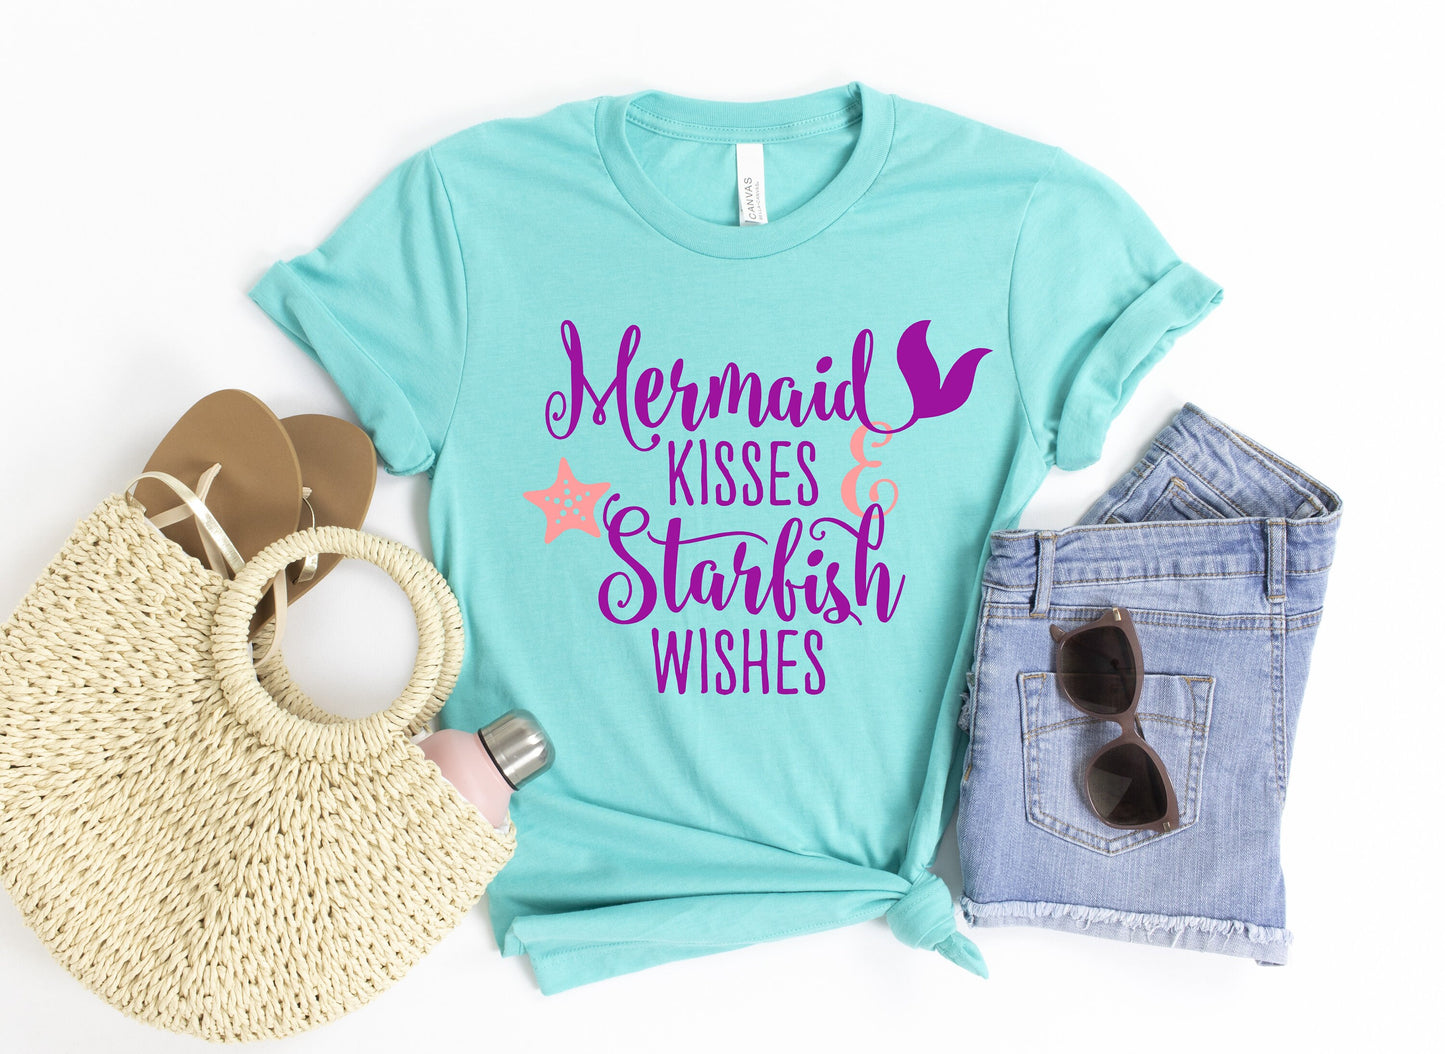 Mermaid Kisses and Starfish Wishes t-shirt - Mermaid Birthday Party Shirt - Mermaid Mom Shirt - Women's Mermaid Shirt - Mermaid Gift